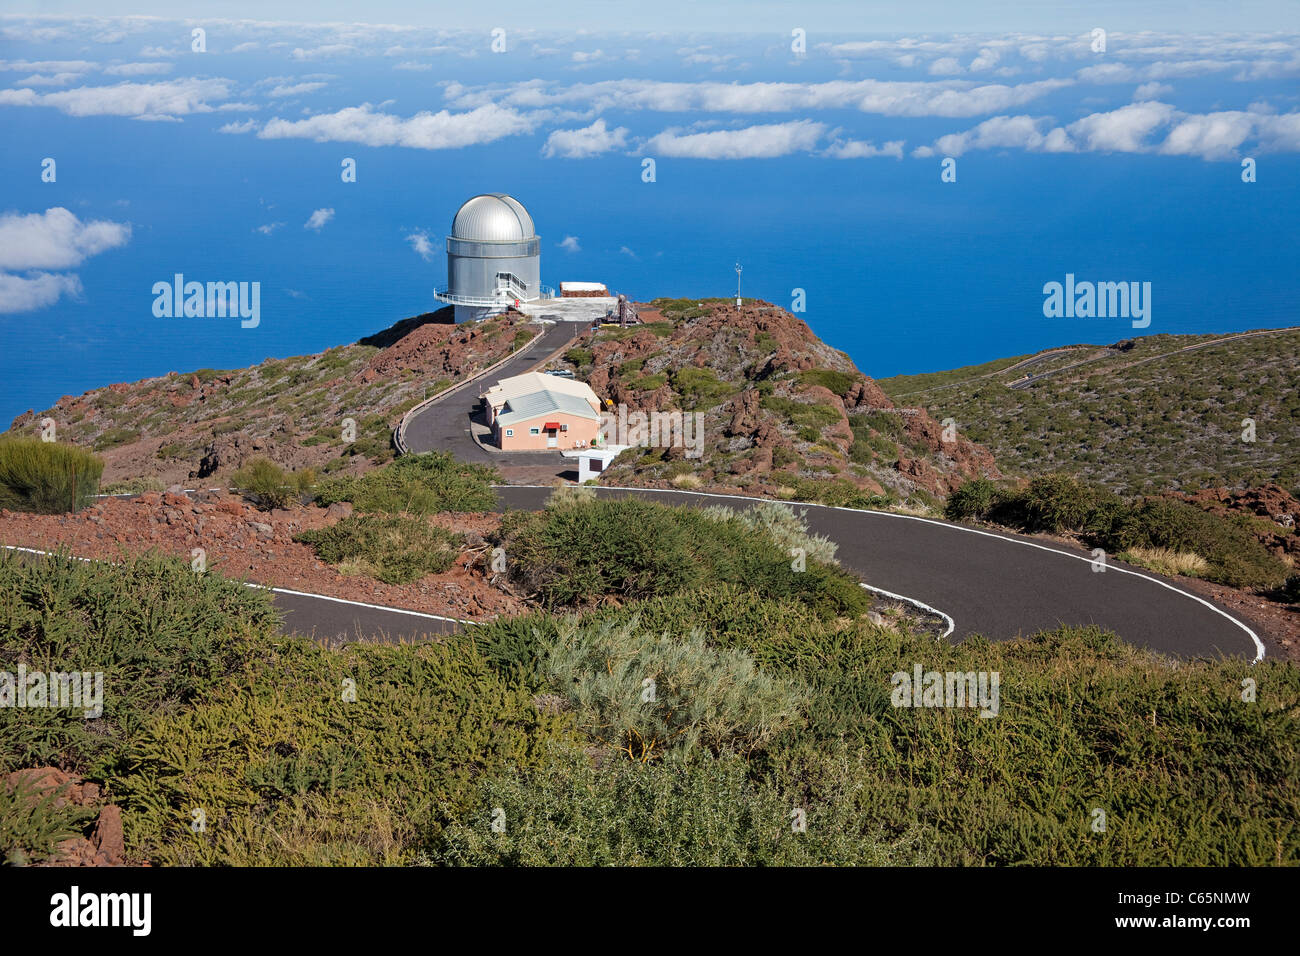 Astronomical observatory on top of Roque de los Muchachos, Parque Nacional de la Caldera de Taburiente, La Palma island, Canary islands, Spain, Europe Stock Photo